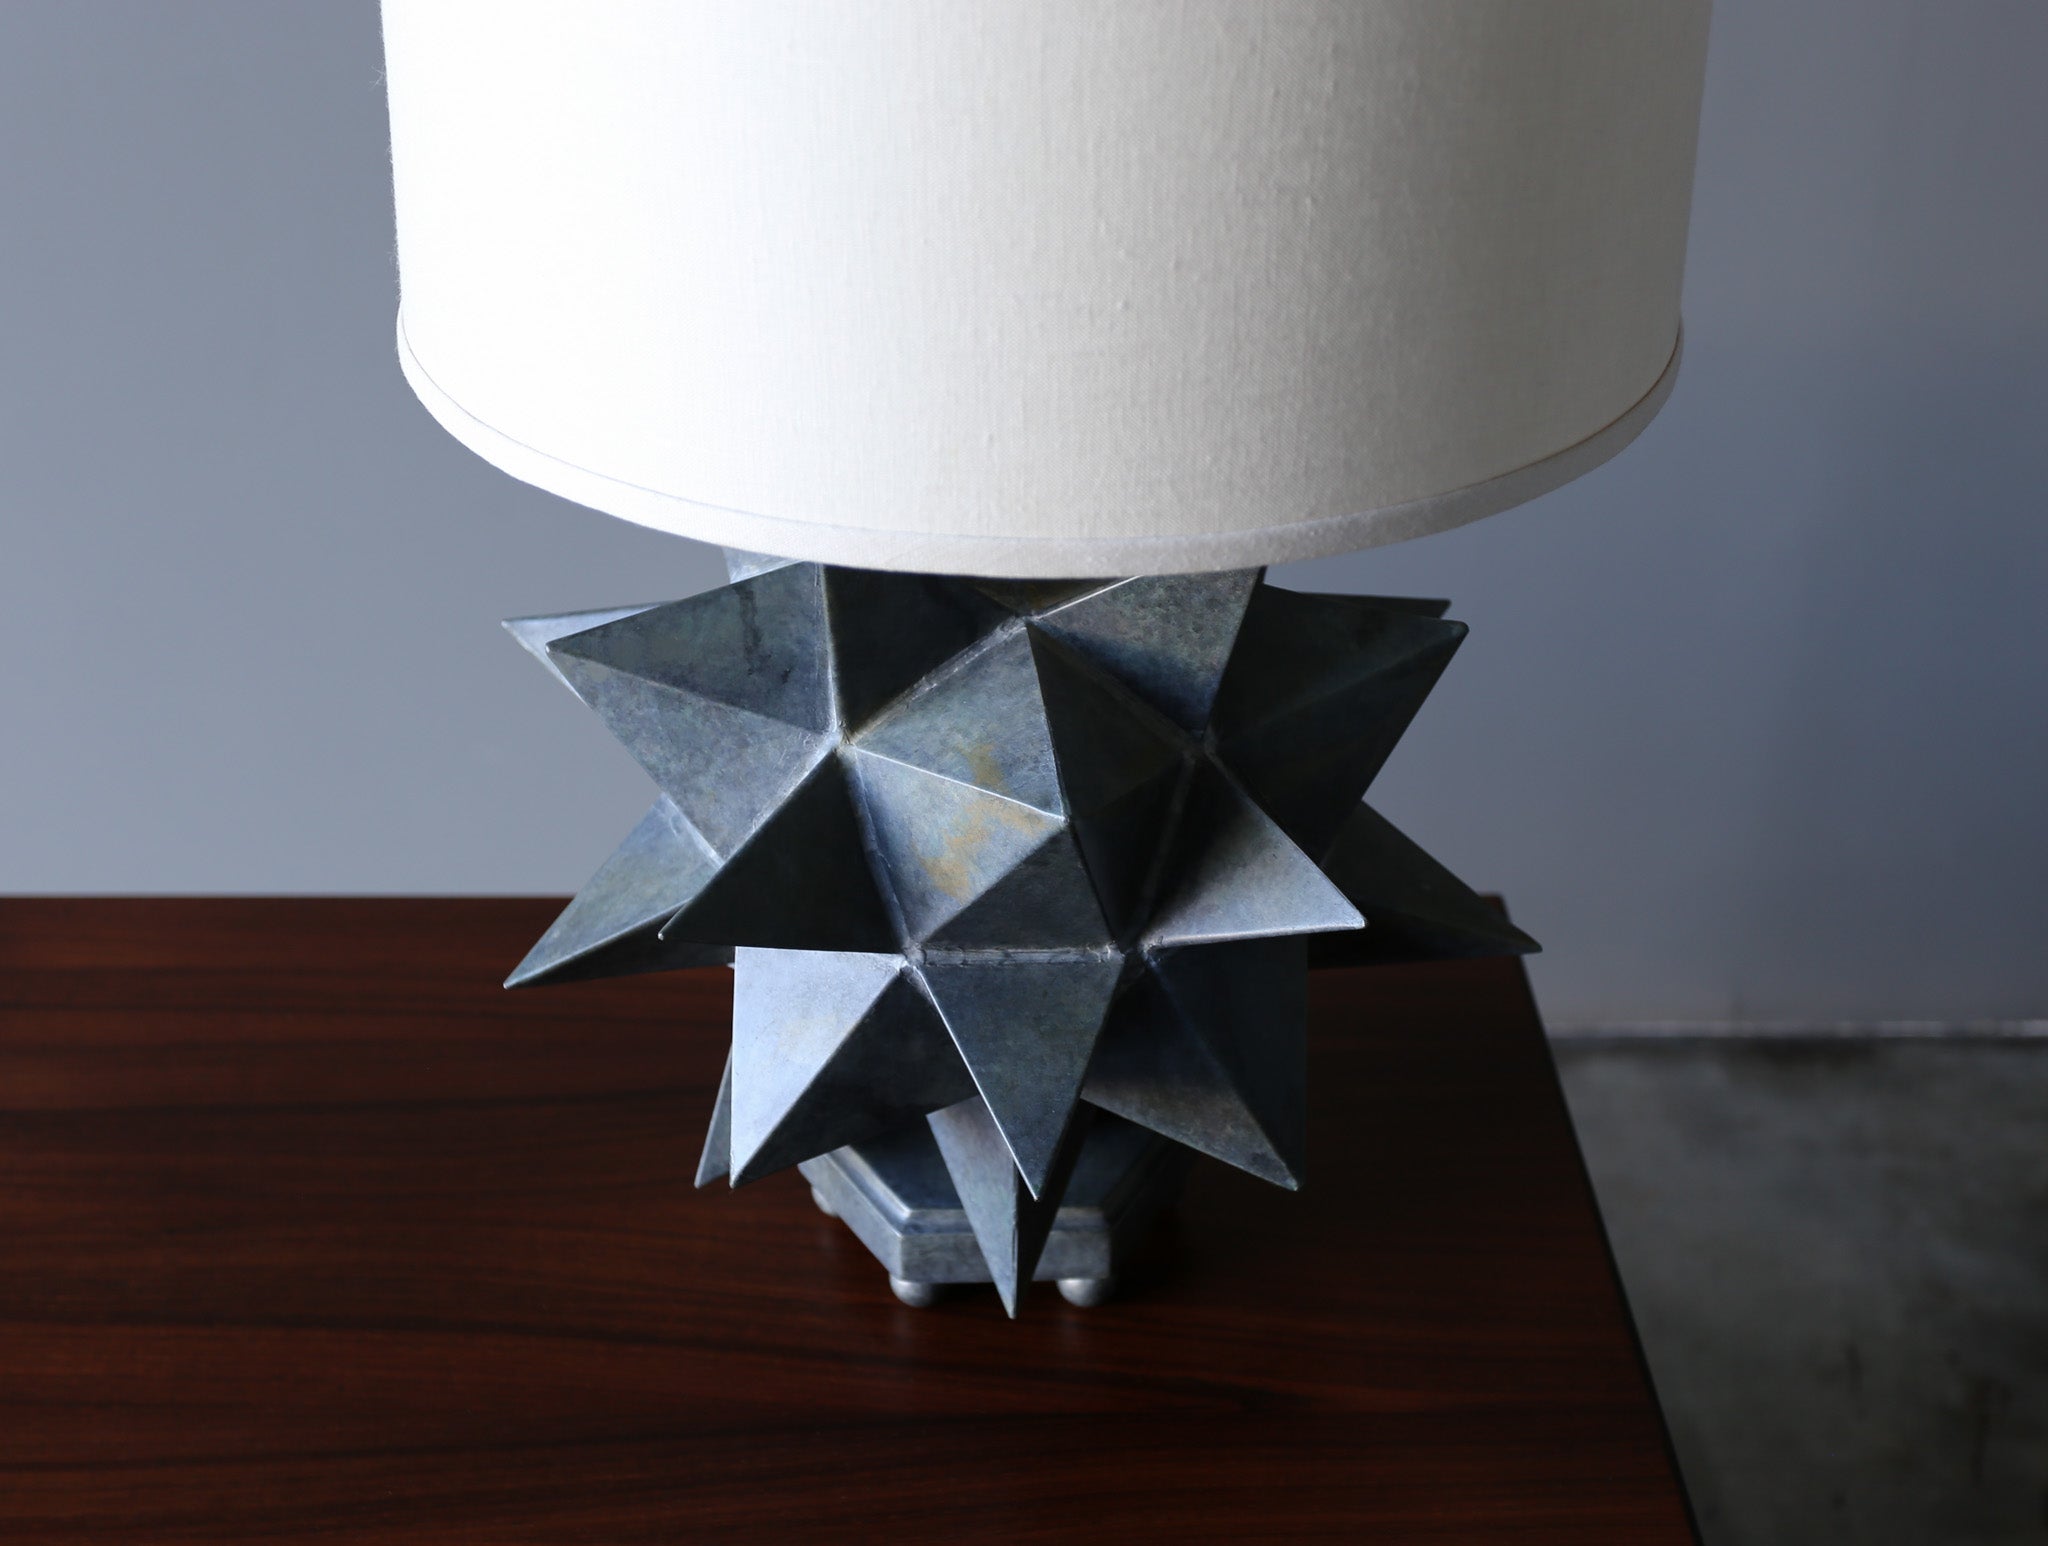 Sculptural Patinated Metal Table Lamp, c.1975